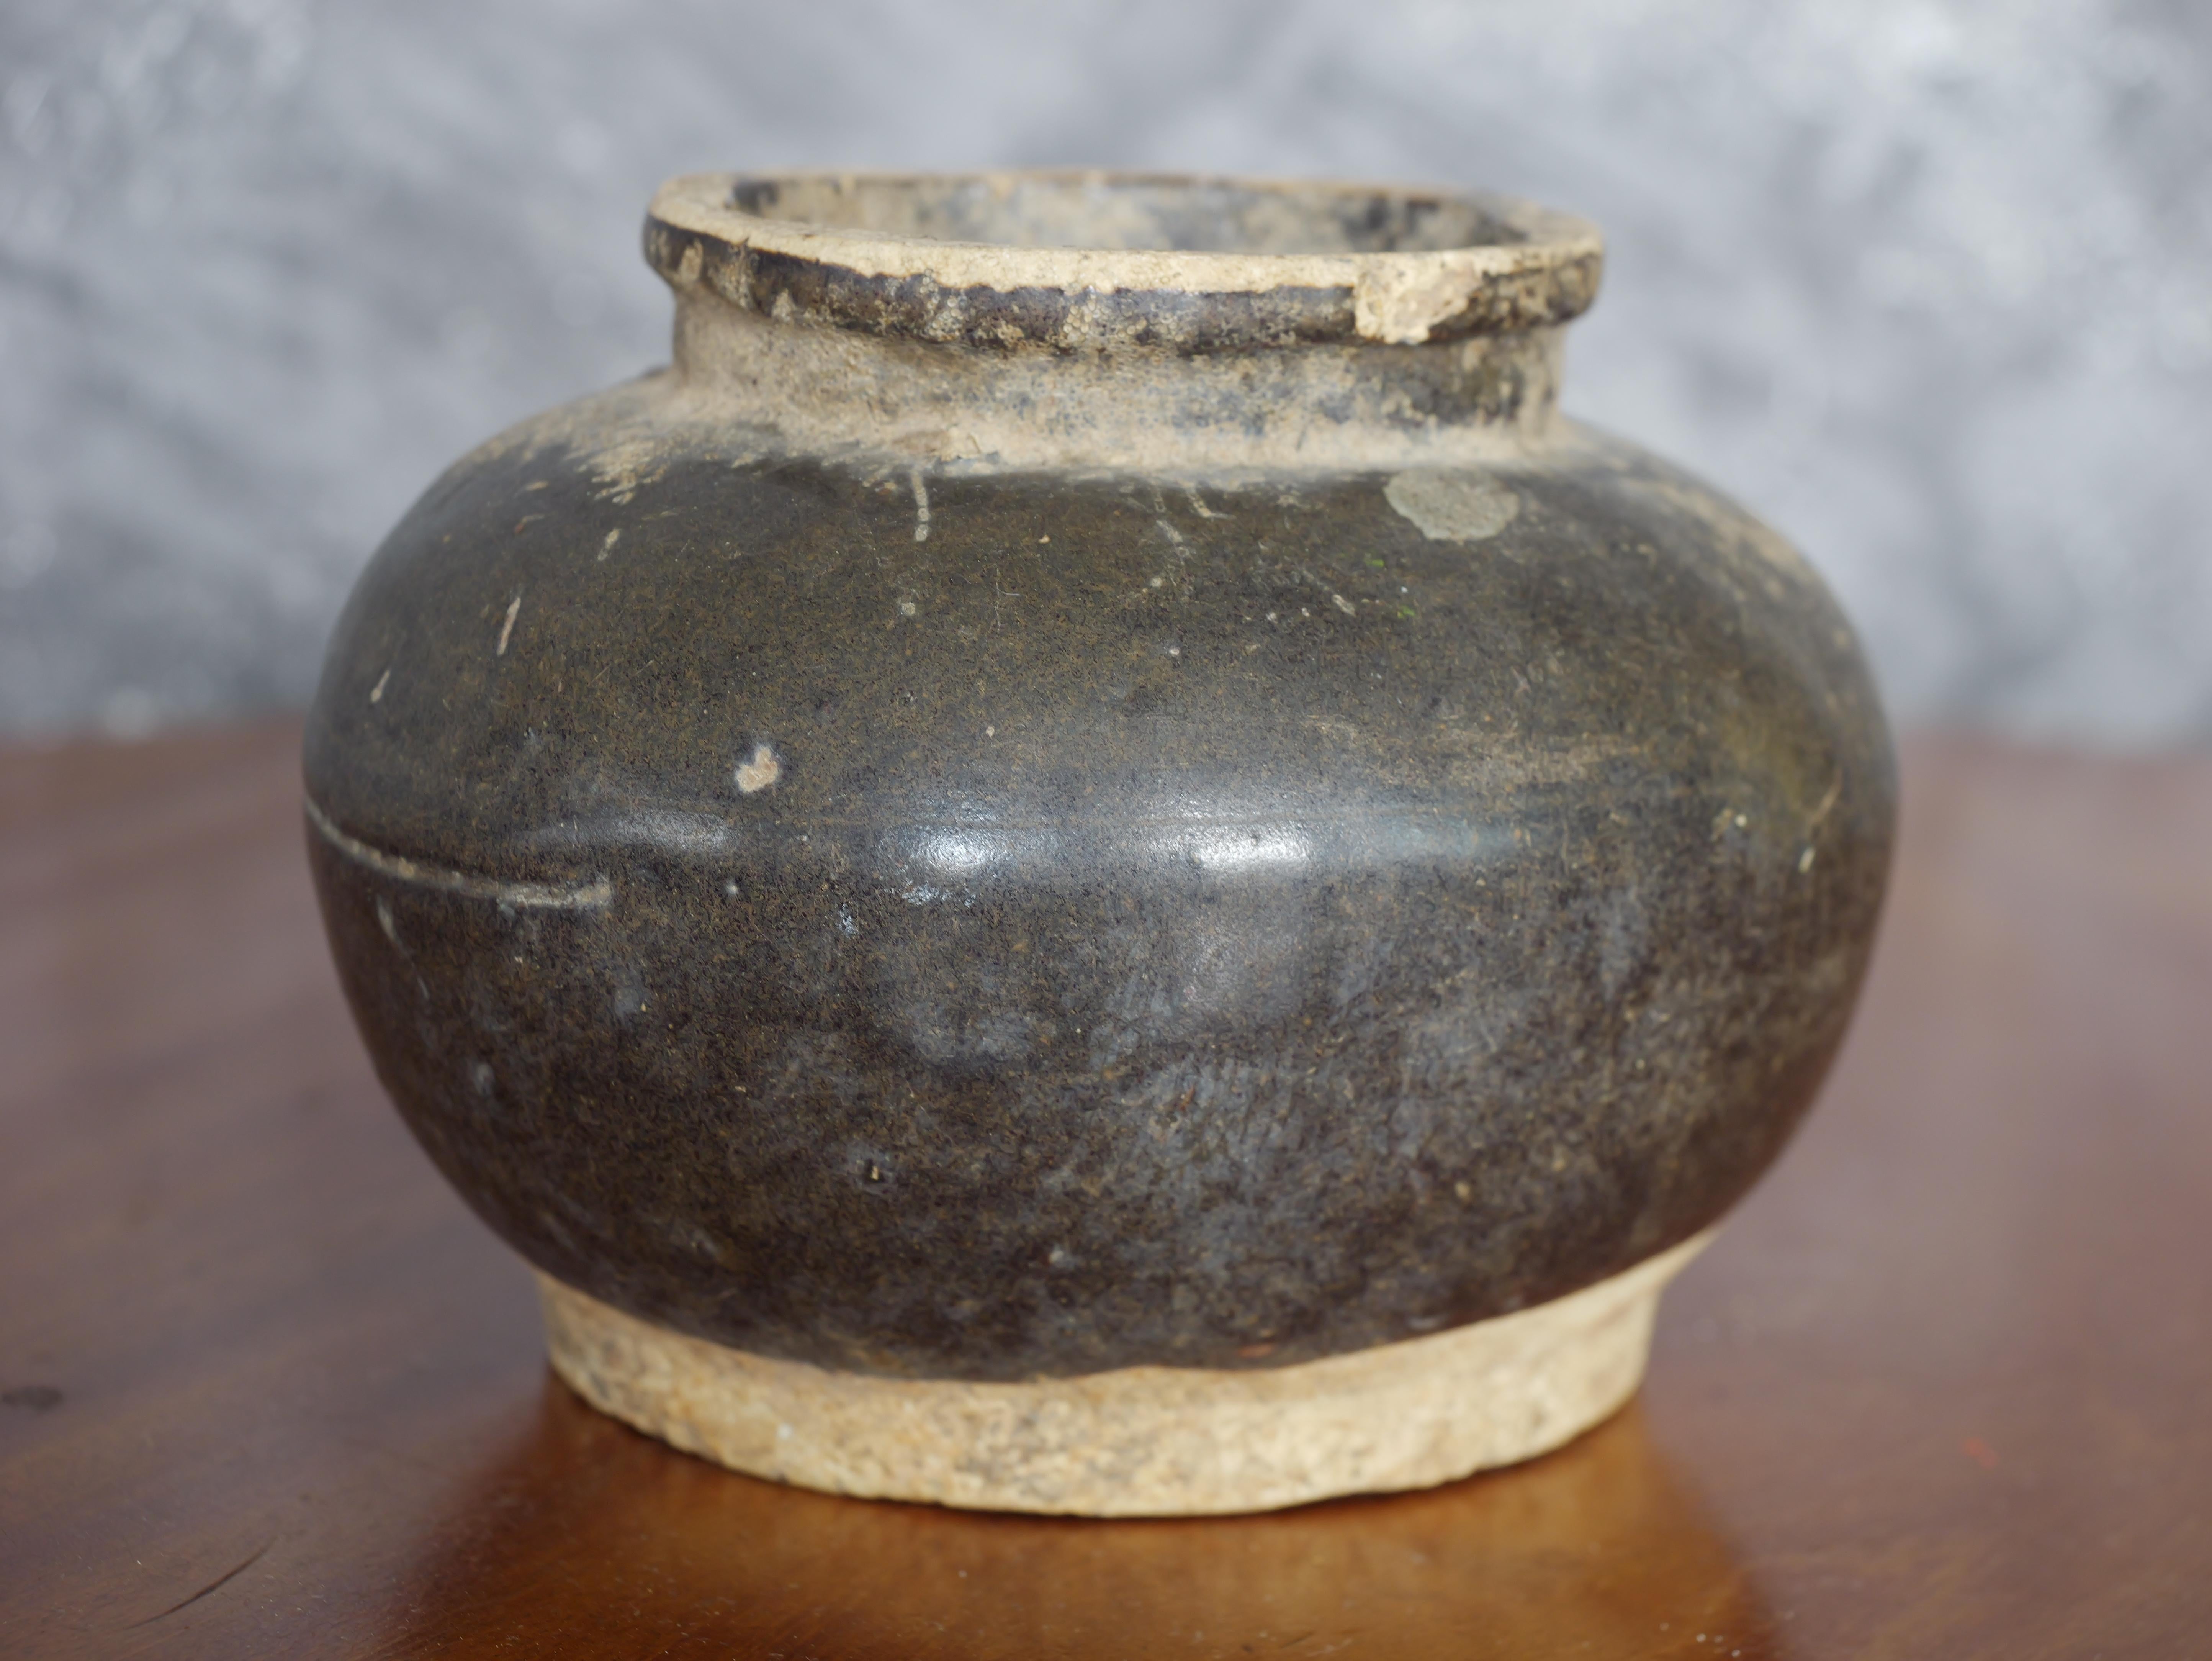 Dieser chinesische, braun glasierte Steingutkrug aus der Song-Dynastie ist trotz seines Alters und leichter Beschädigungen ein bemerkenswertes Stück. Das Gefäß weist eine reiche braune Glasur auf, die typisch für die Keramik der Song-Dynastie ist,